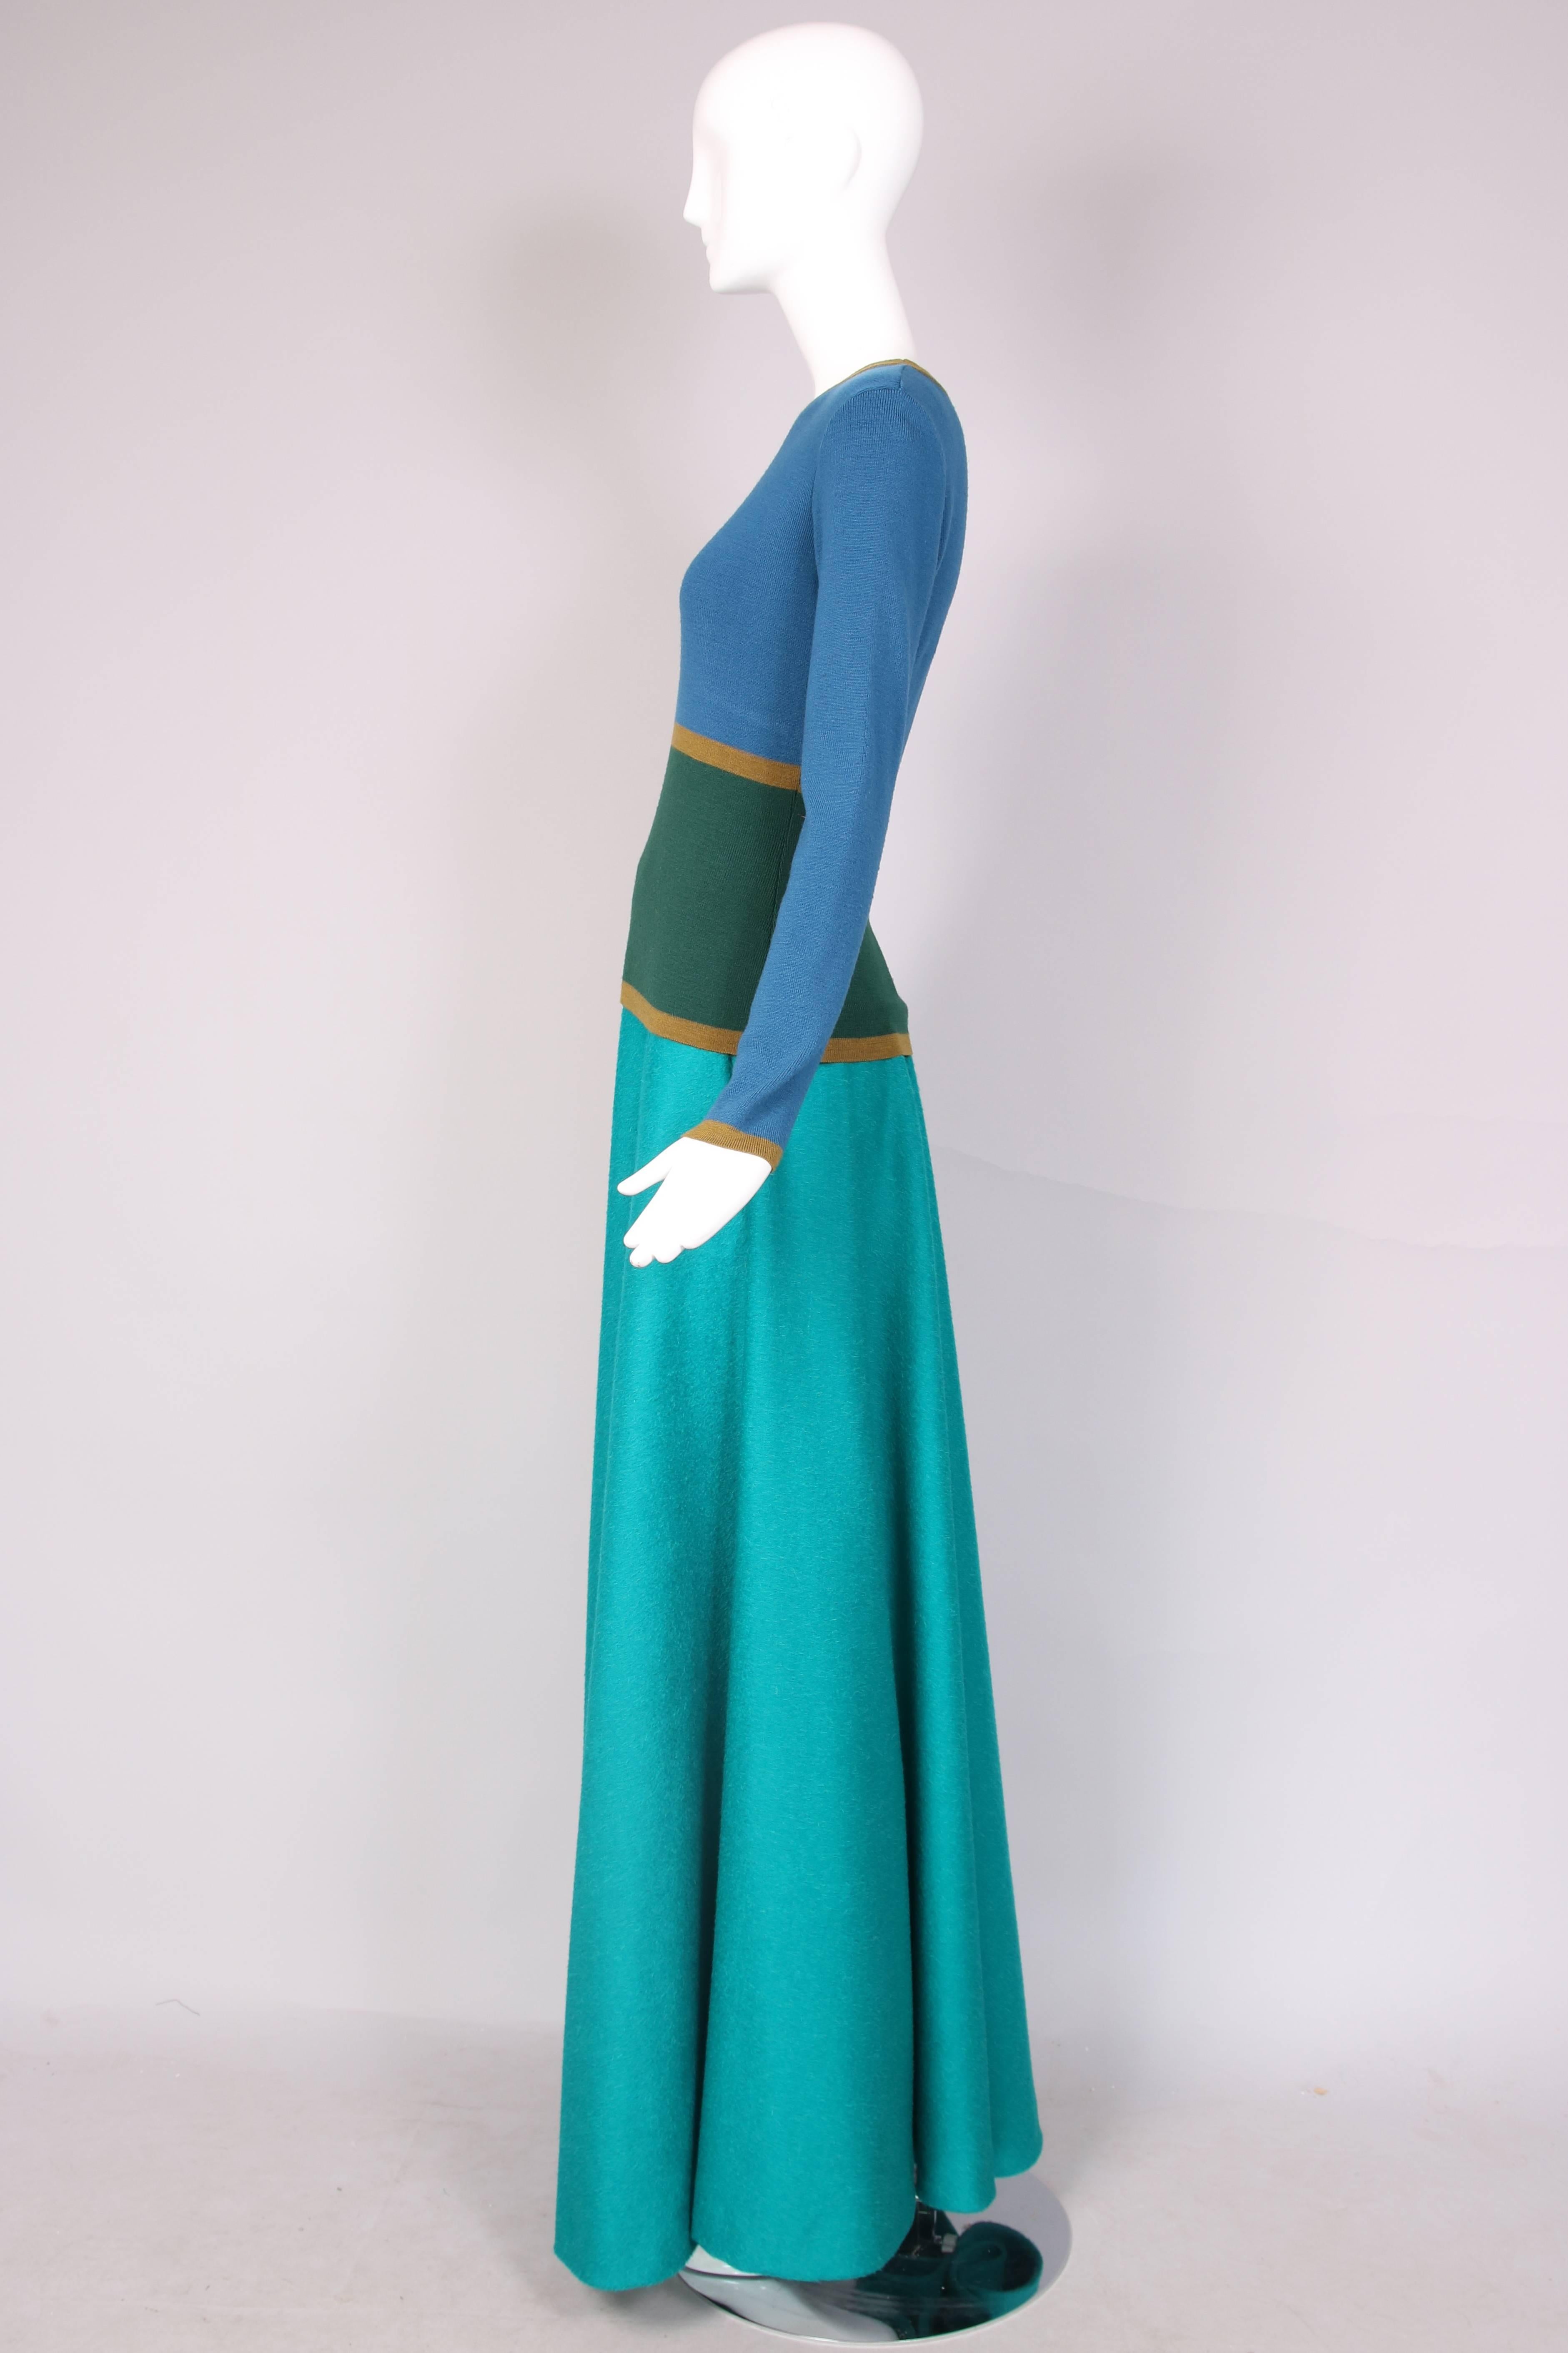 Ensemble Yves Saint Laurent pull en laine d'agneau vert et bleu à manches longues et jupe longue en laine d'alpaga bleu sarcelle. En parfait état. Le pull est une taille 40, la jupe n'est pas étiquetée.
MESURES :
Chandail
Épaules - 15
Poitrine -